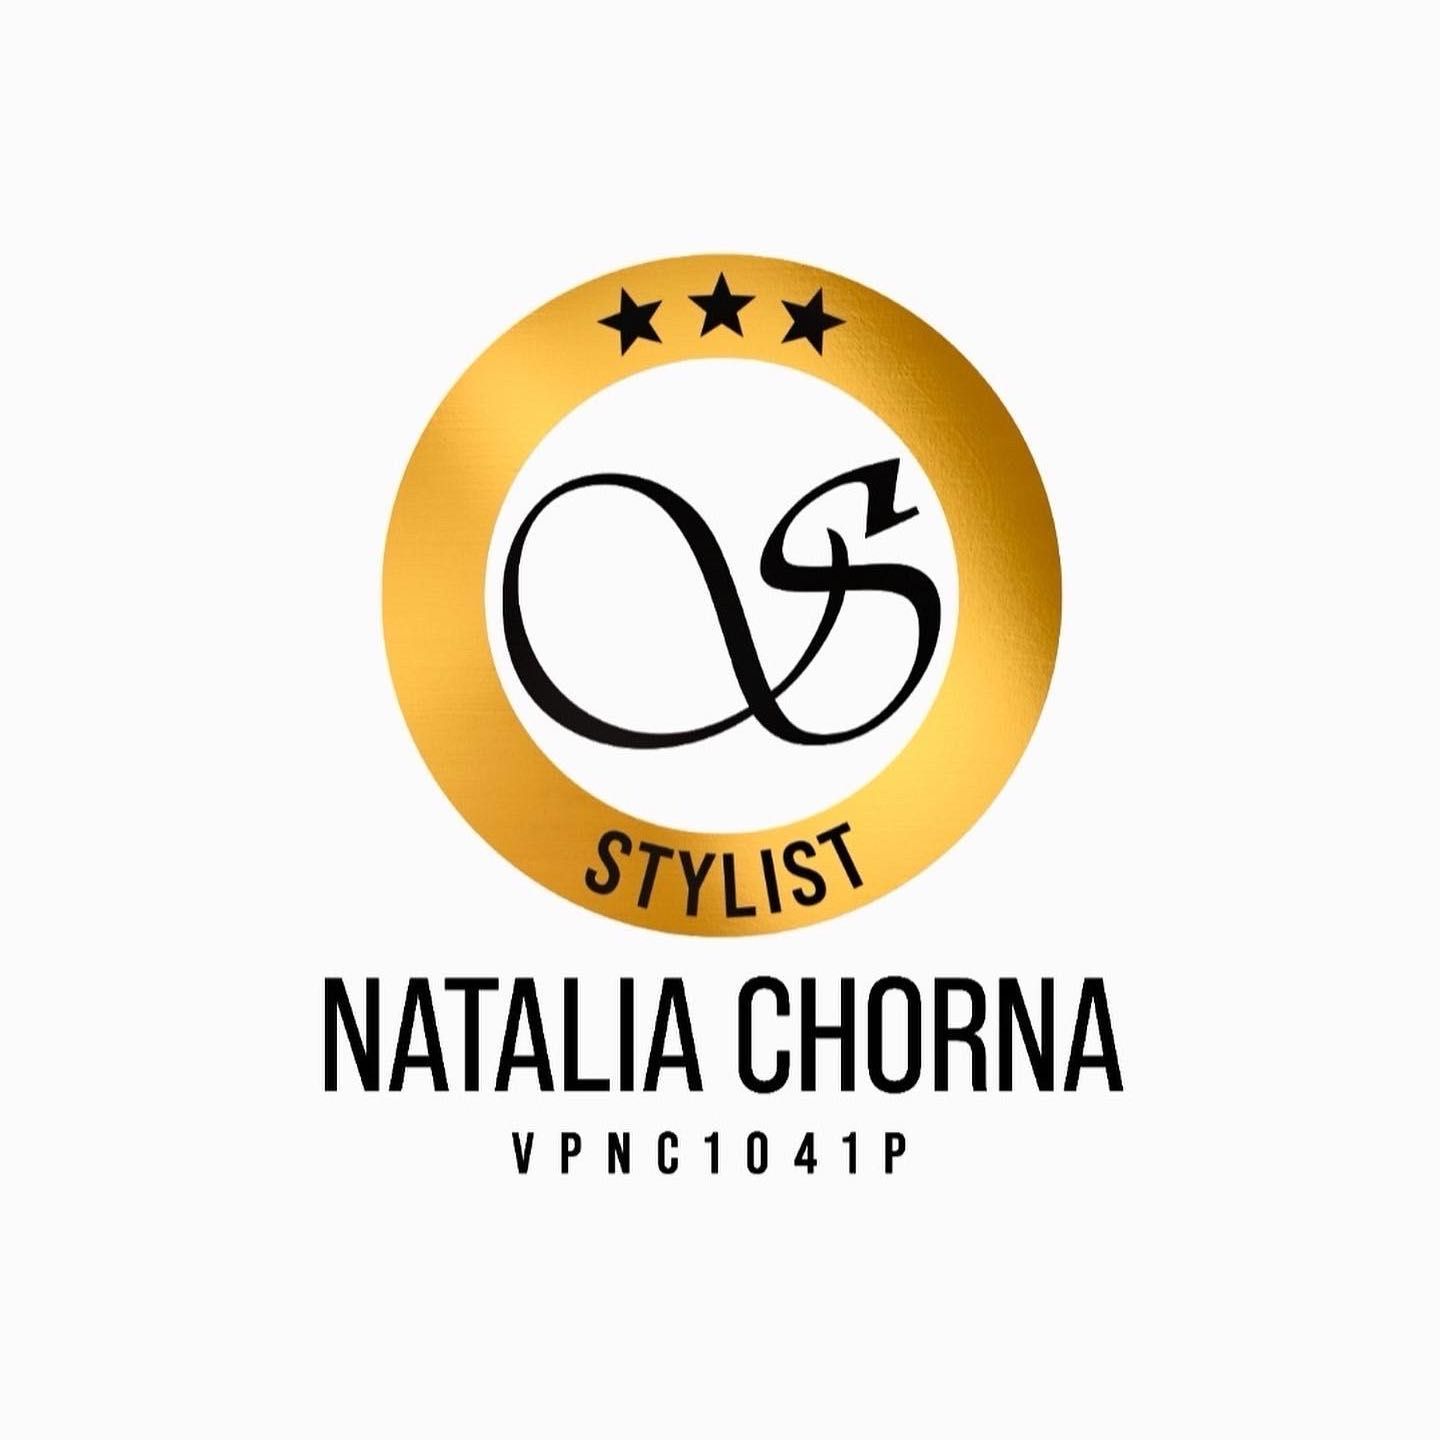 Permanent Make-up Natalia Chorna, Podwałe 36a/7, 50-040, Wrocław